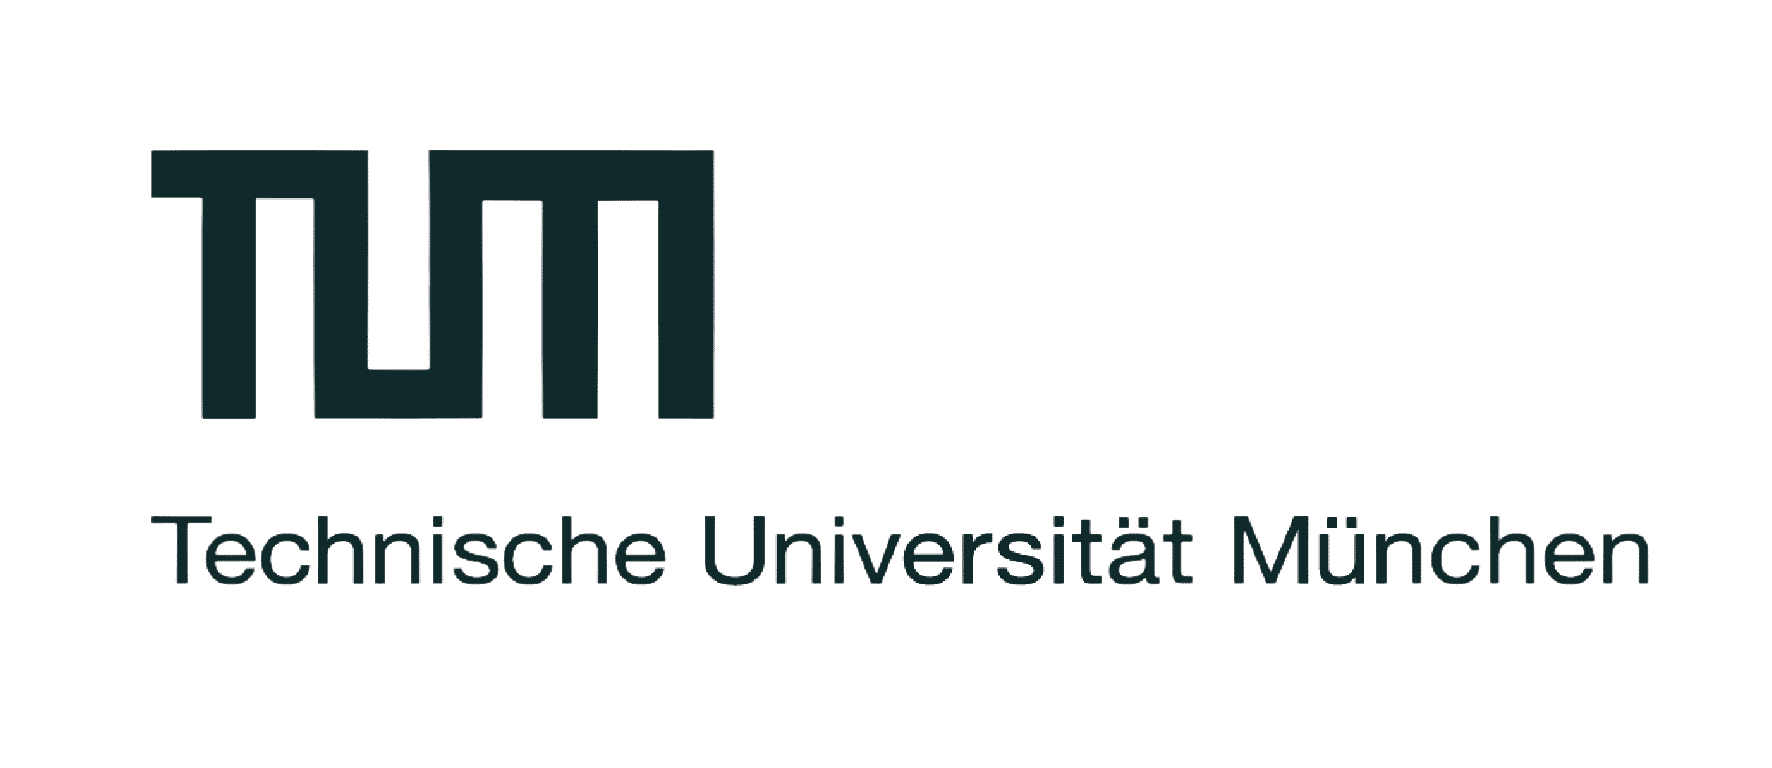 Als Startup Coach habe ich Vorträge an der TU München gehalten